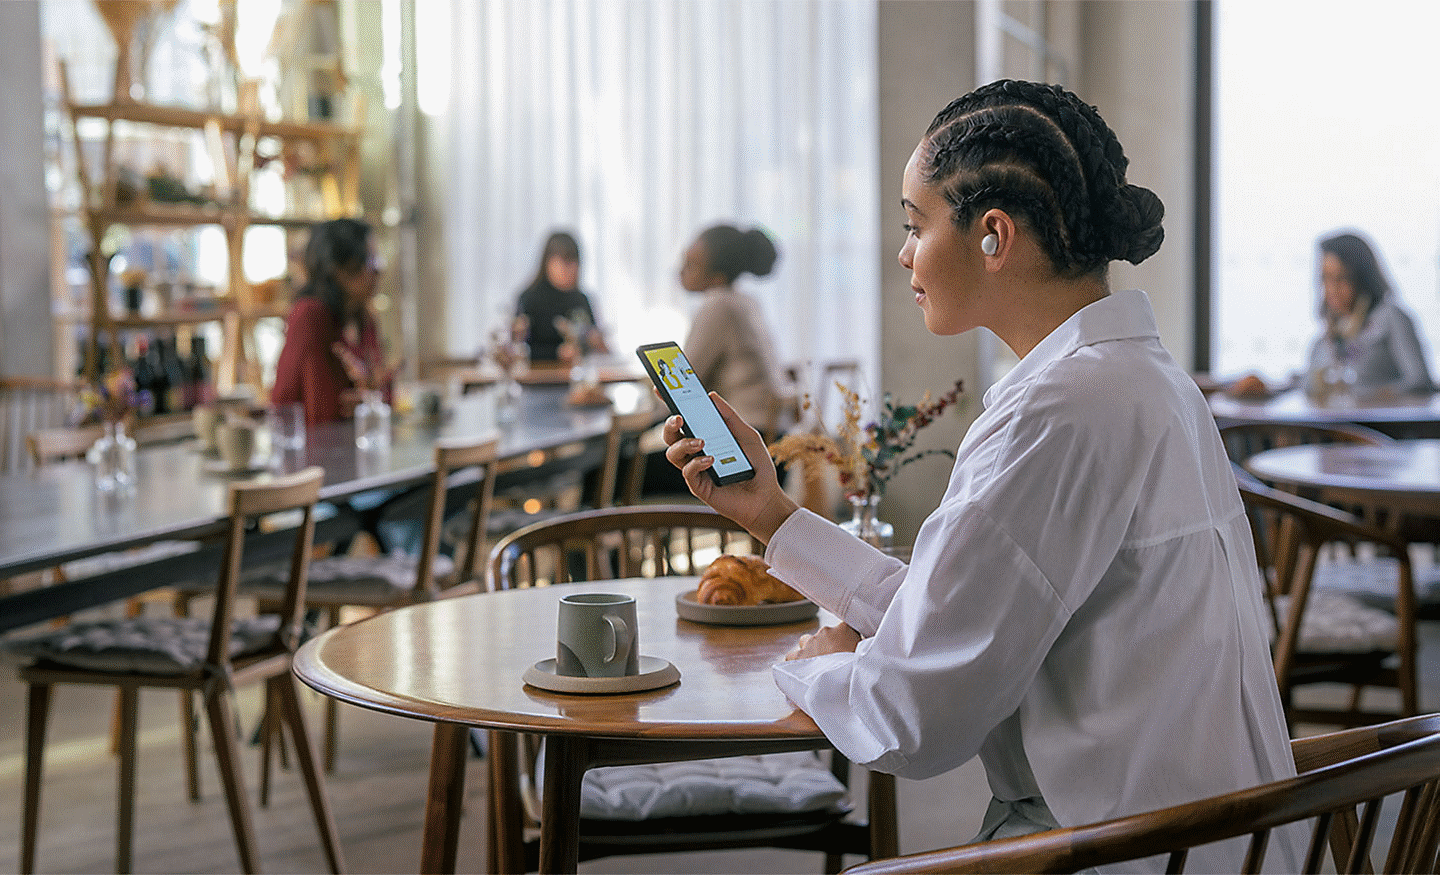 Bild einer Person, die in einem Café sitzt und die WF-100XM5 Kopfhörer trägt, während sie auf ihr Smartphone schaut